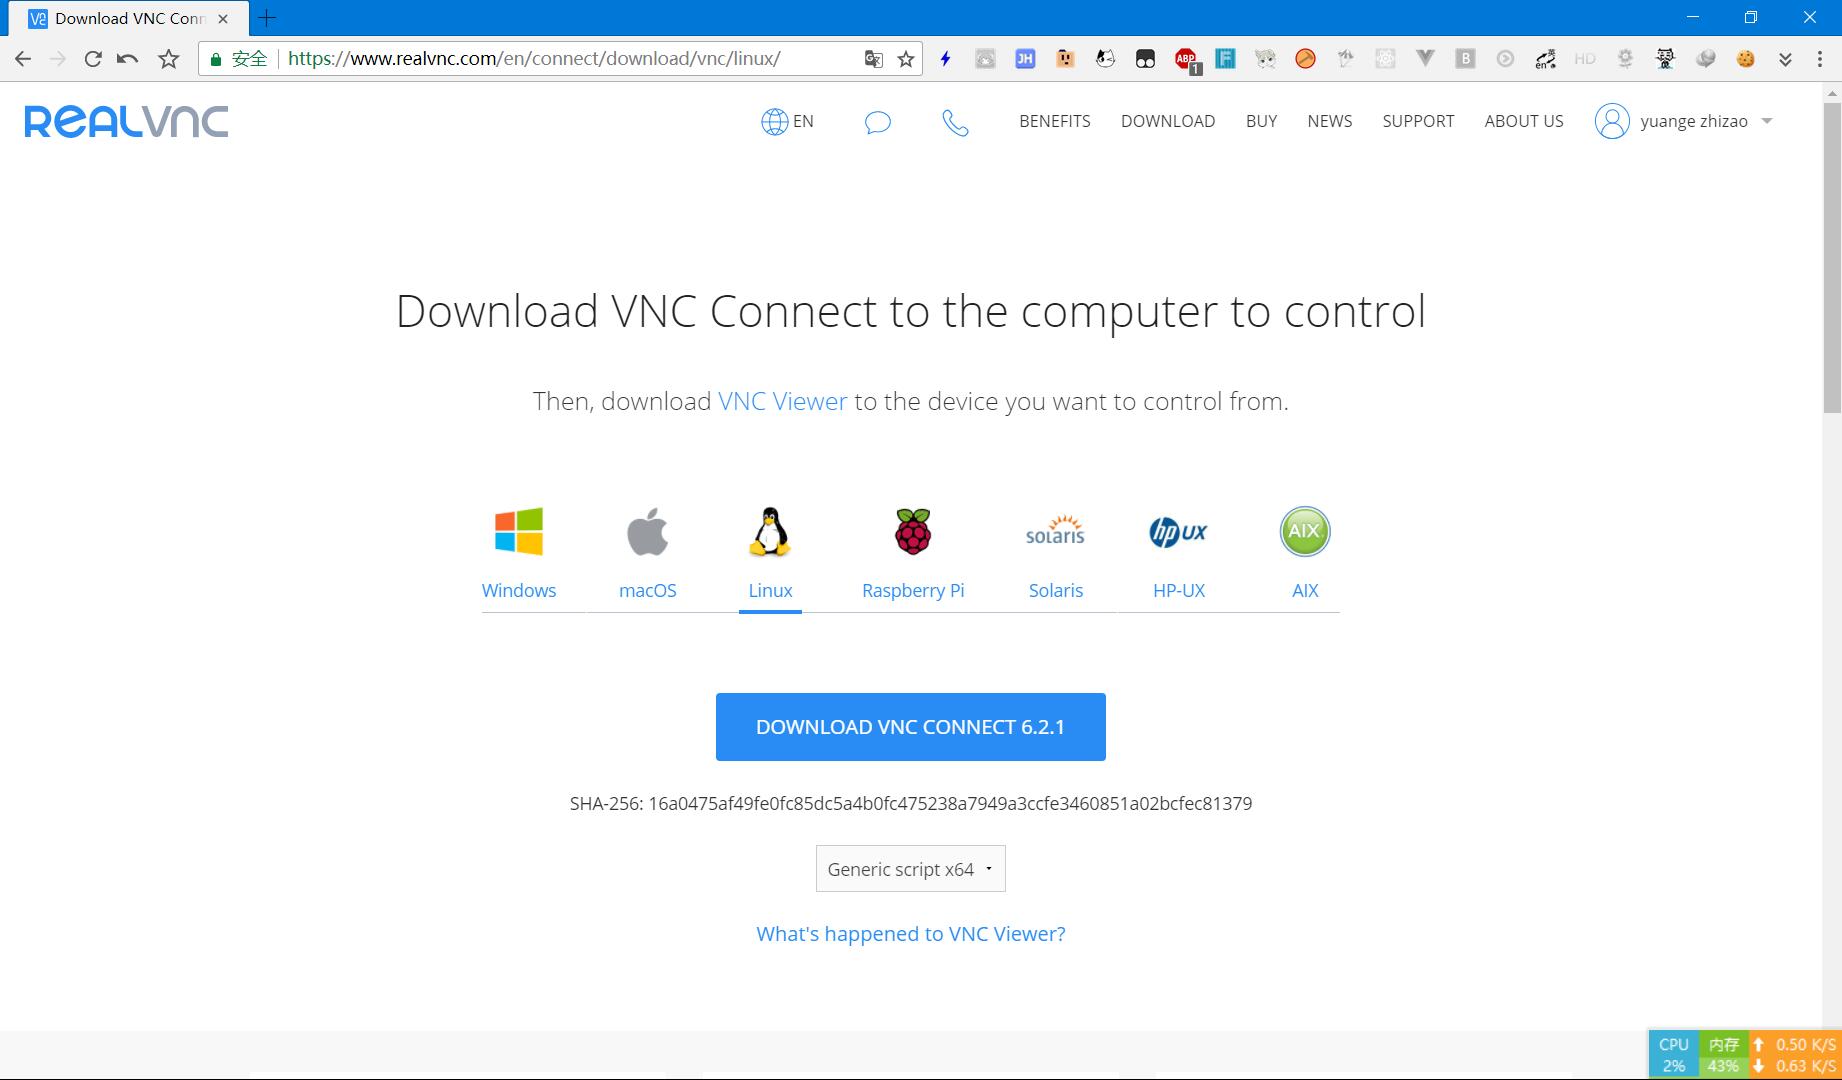 下载VNC-Server-6.2.1-Linux-x64-ANY.tar.gz